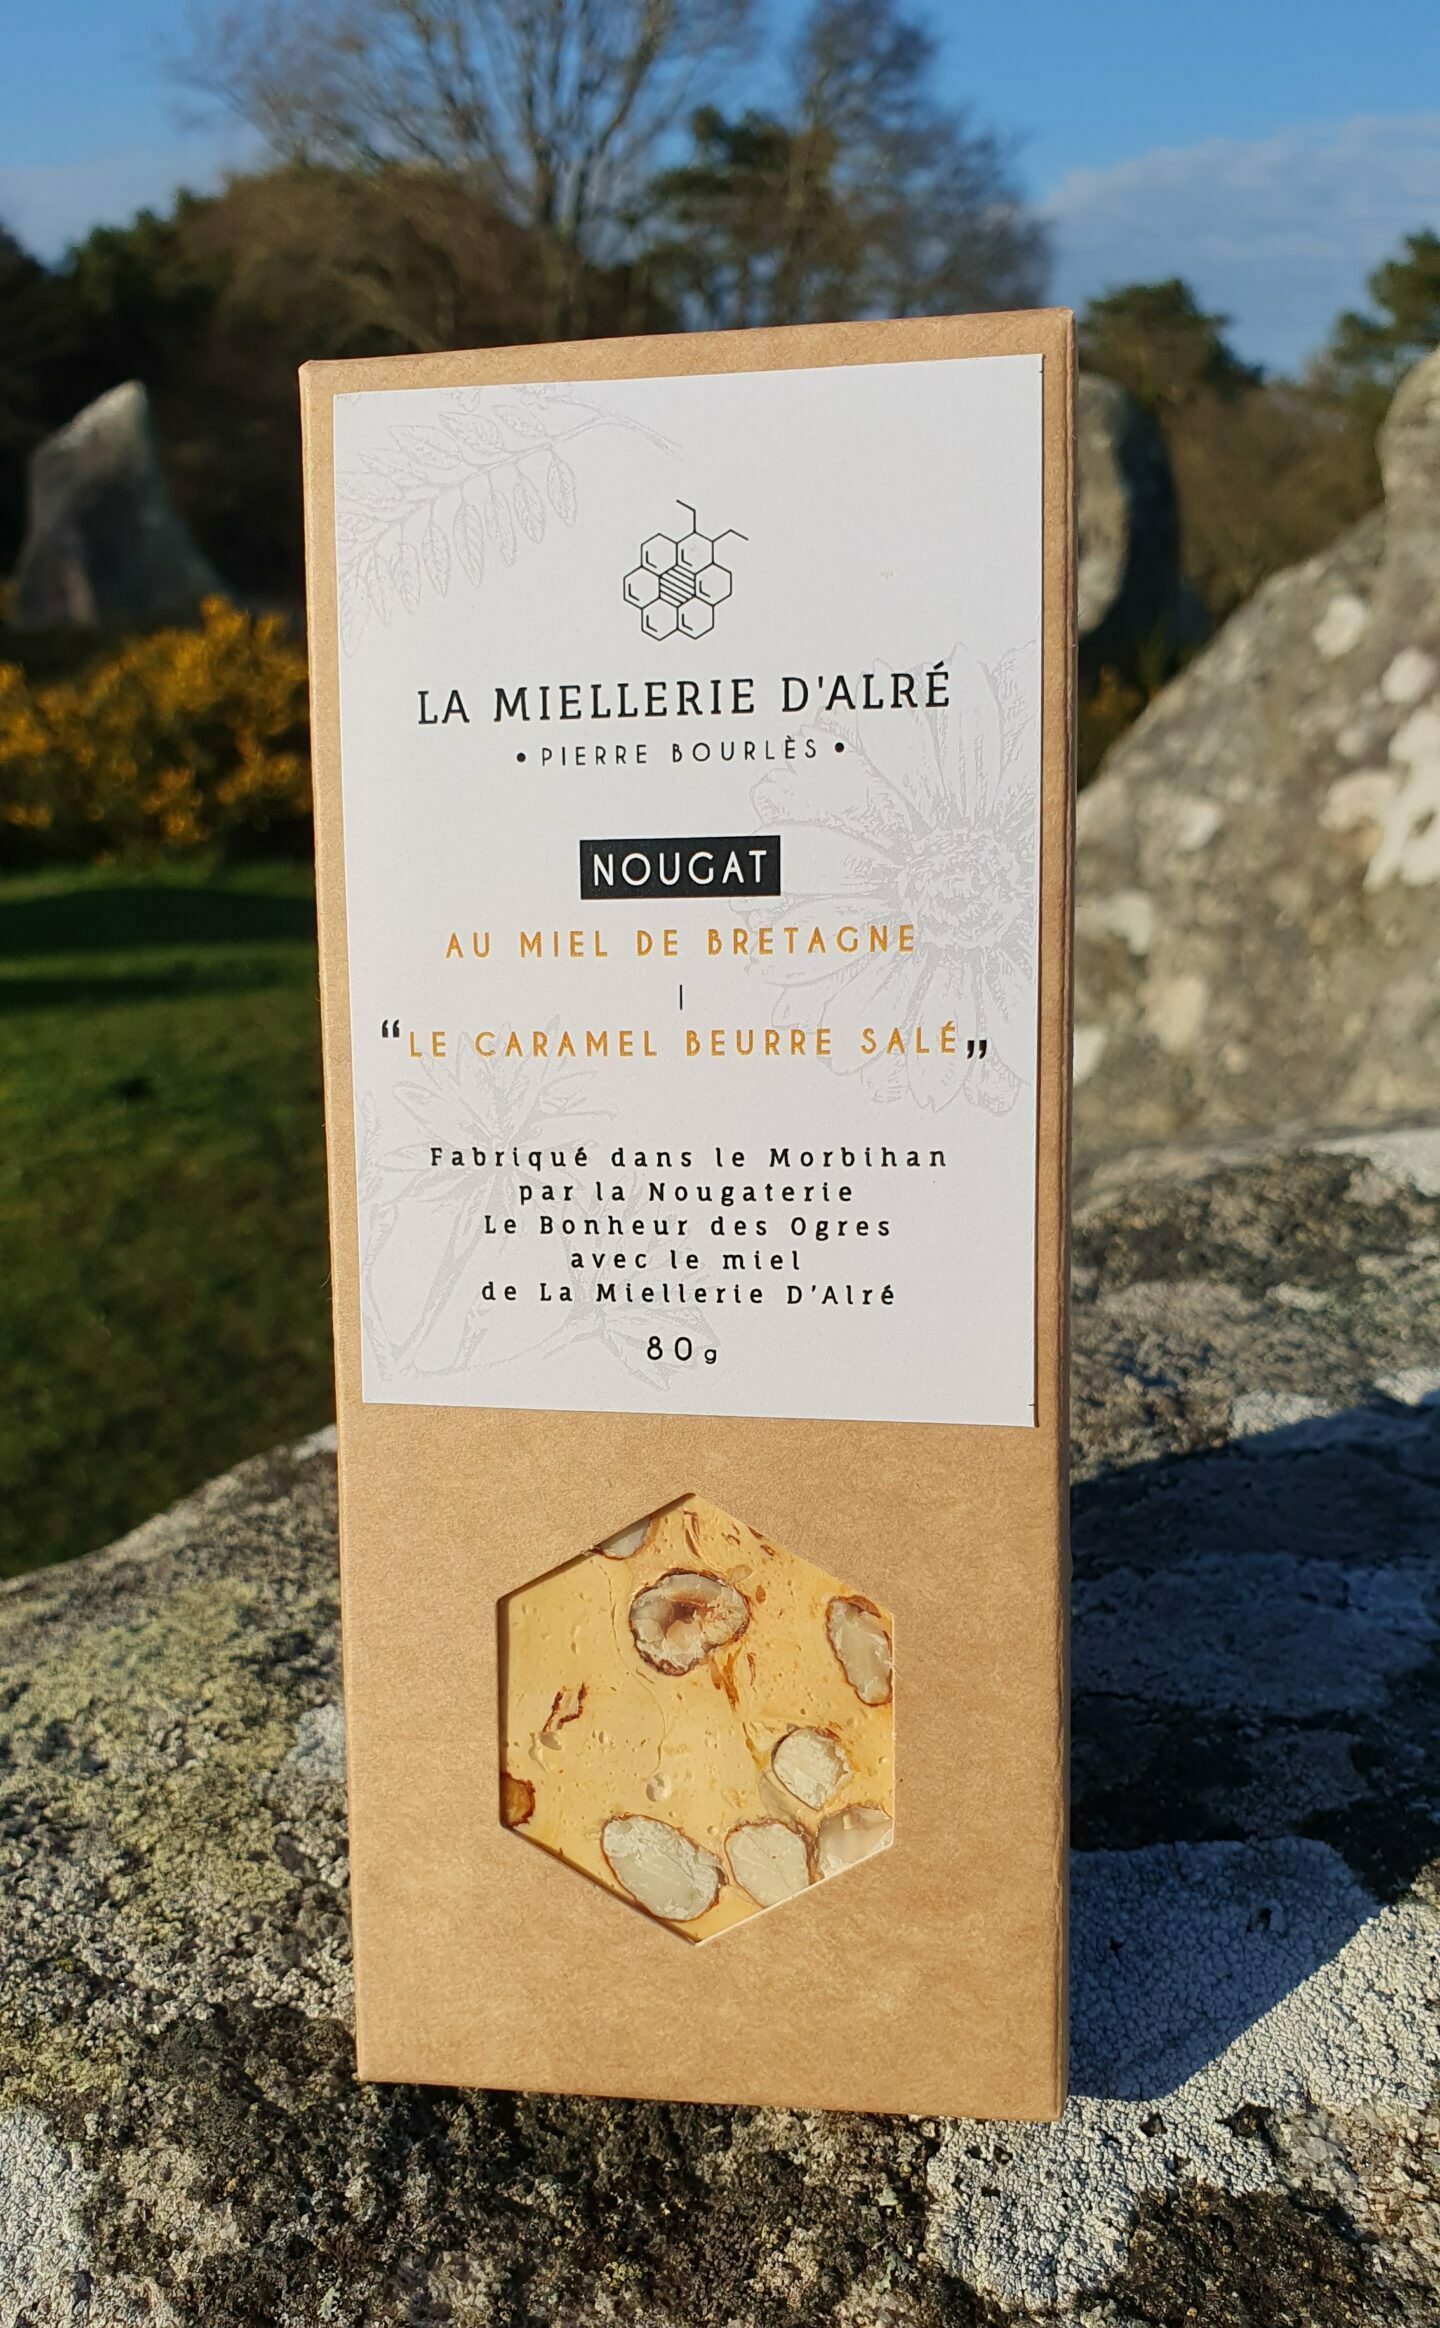 La Miellerie d'Alre - Nougat au miel de Bretagne : “Le Caramel Beurre Salé”